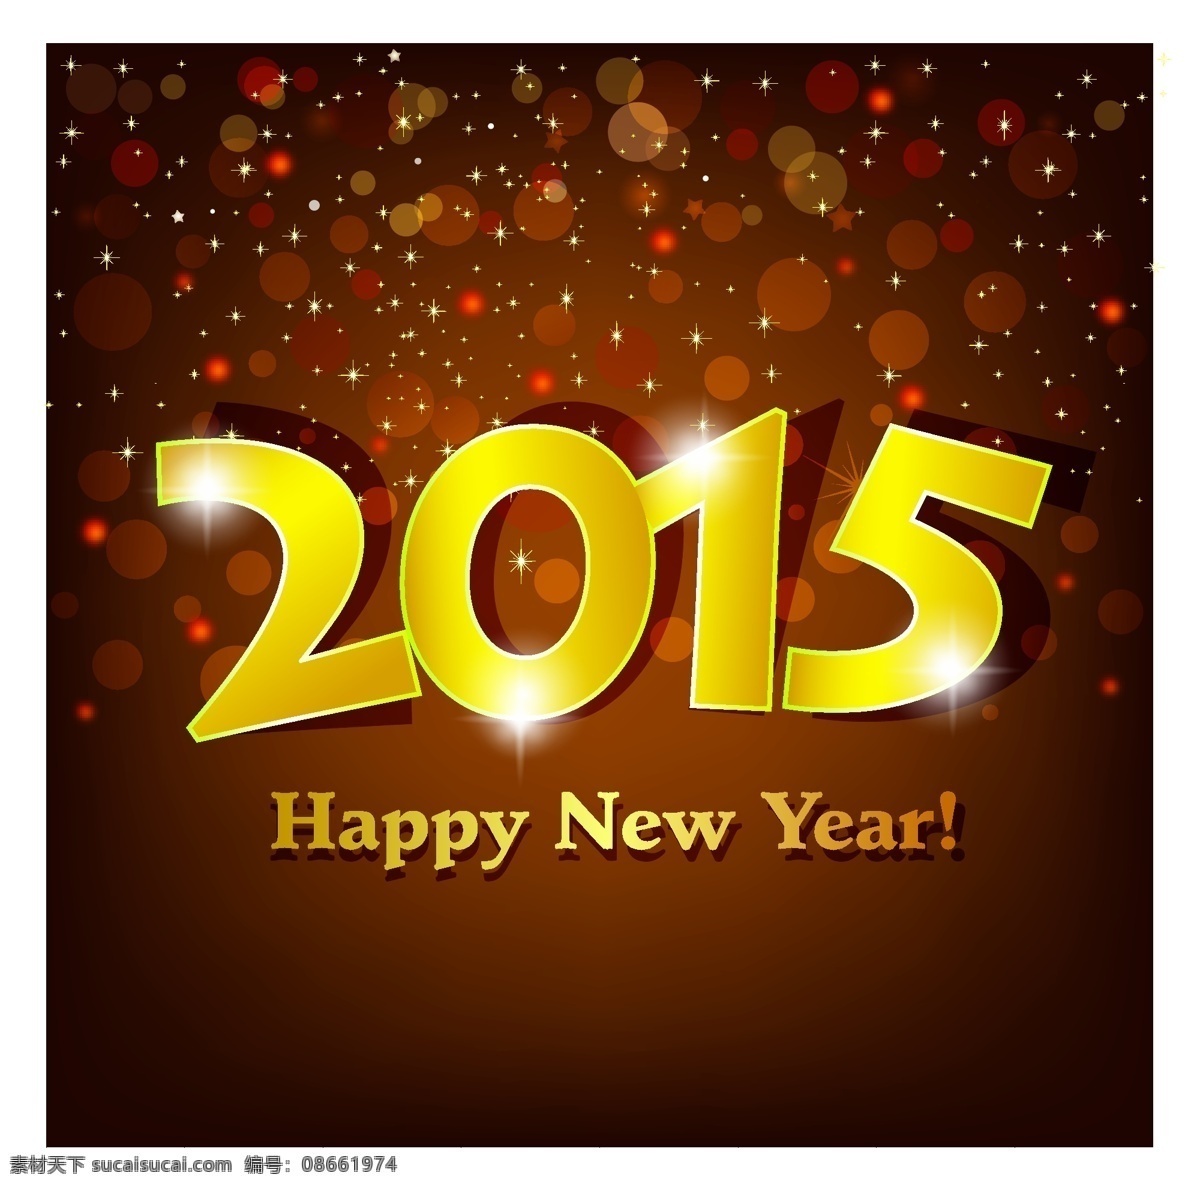 2015 新年 字体 ai格式 happy new year 背景 创意字体 光晕 剪纸 金色 矢量图 创意 矢量 新年快乐 羊年 2015年 节日素材 其他节日